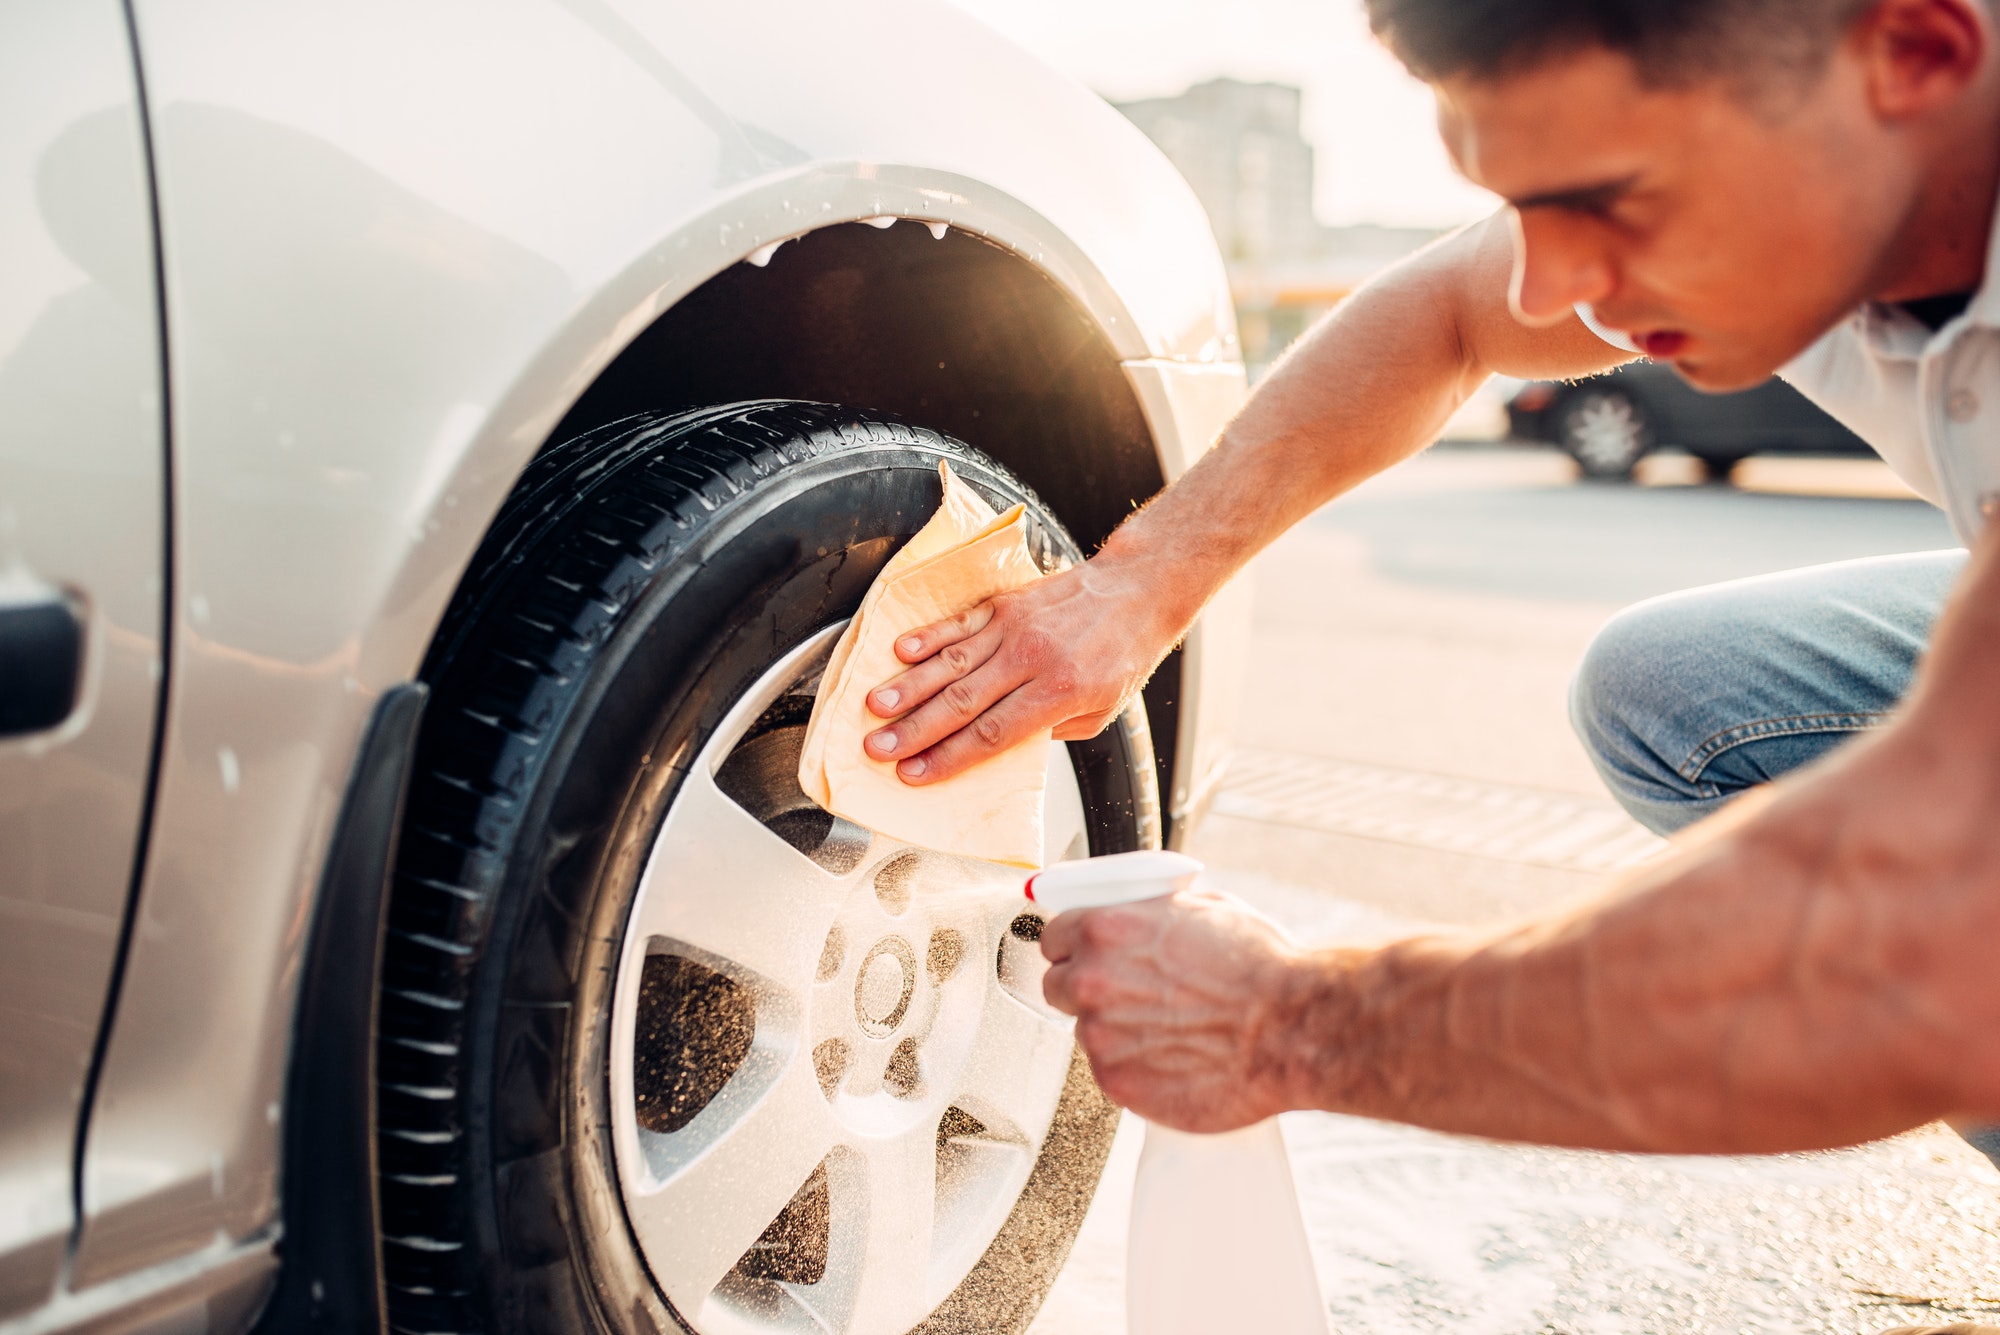 Limpiar neumáticos y ruedas de automóviles